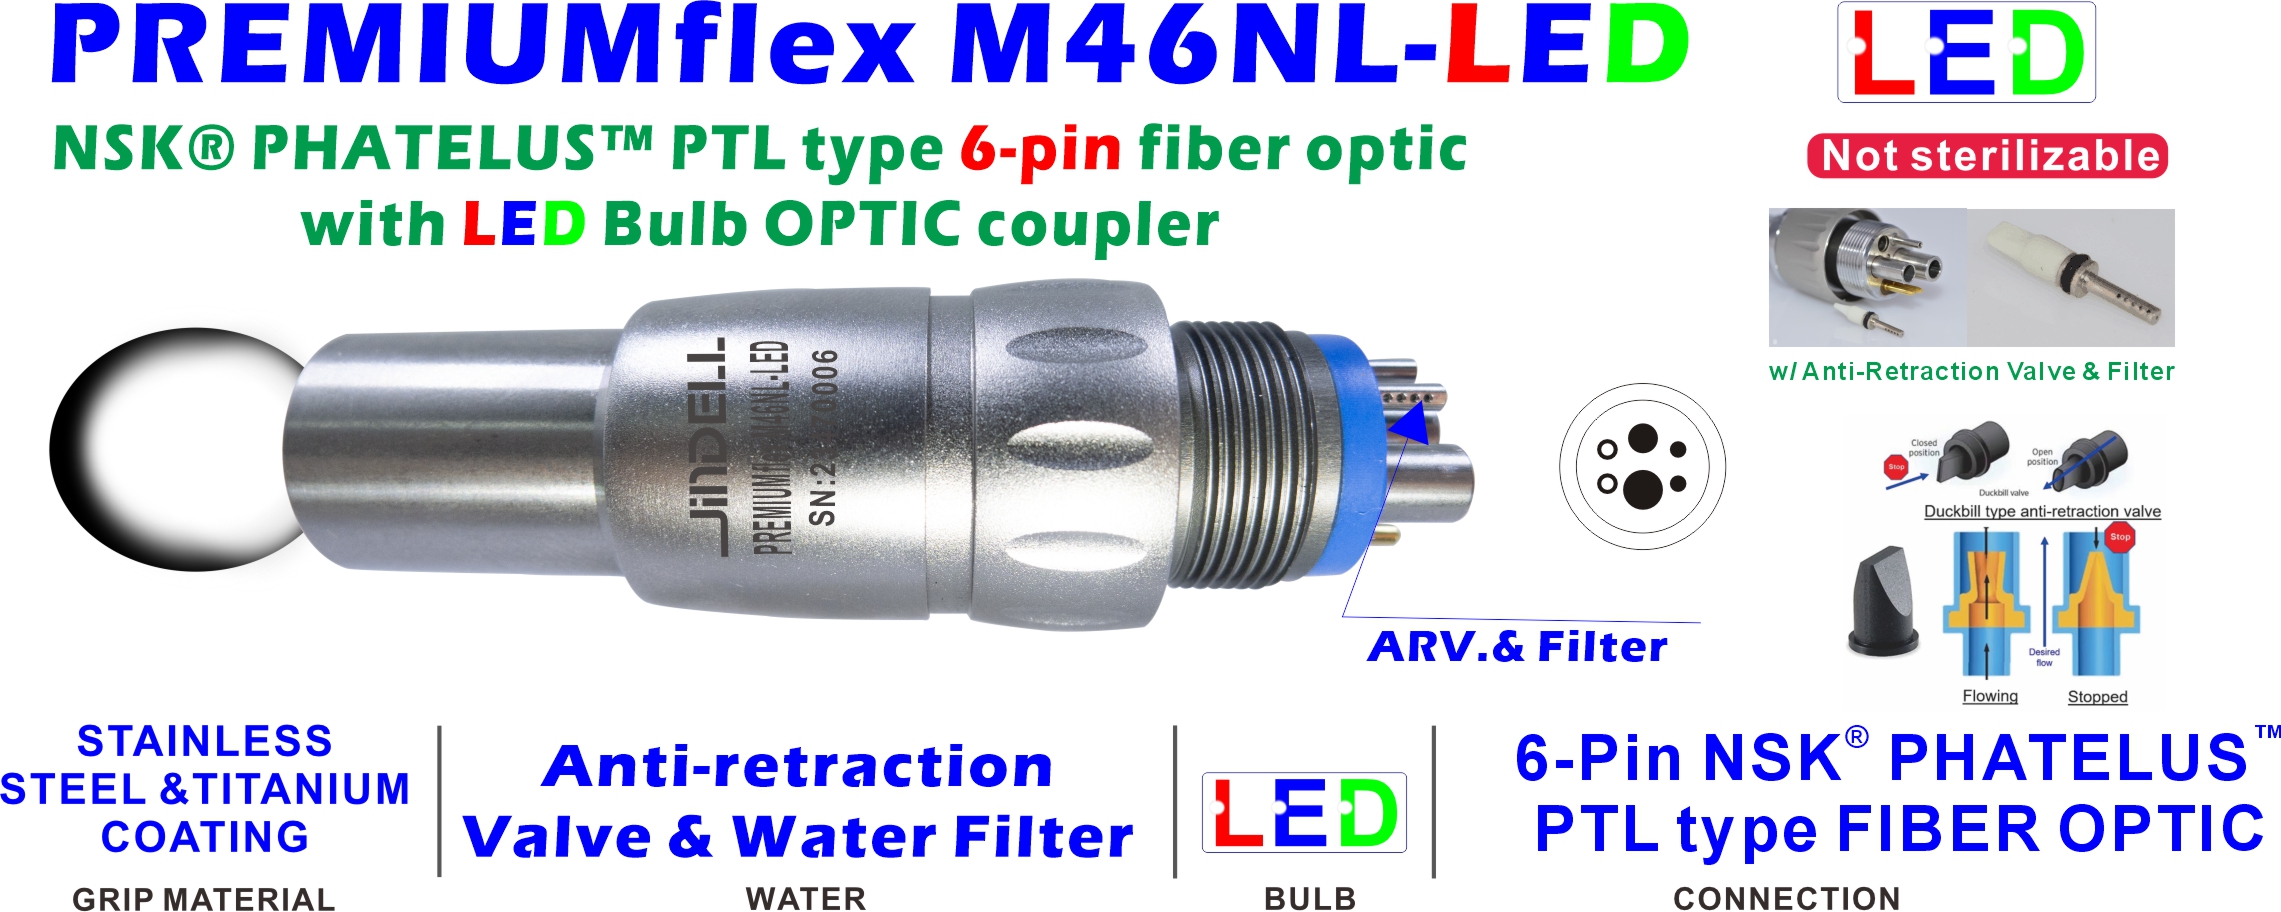 PREMIUMflex M46NL-LED